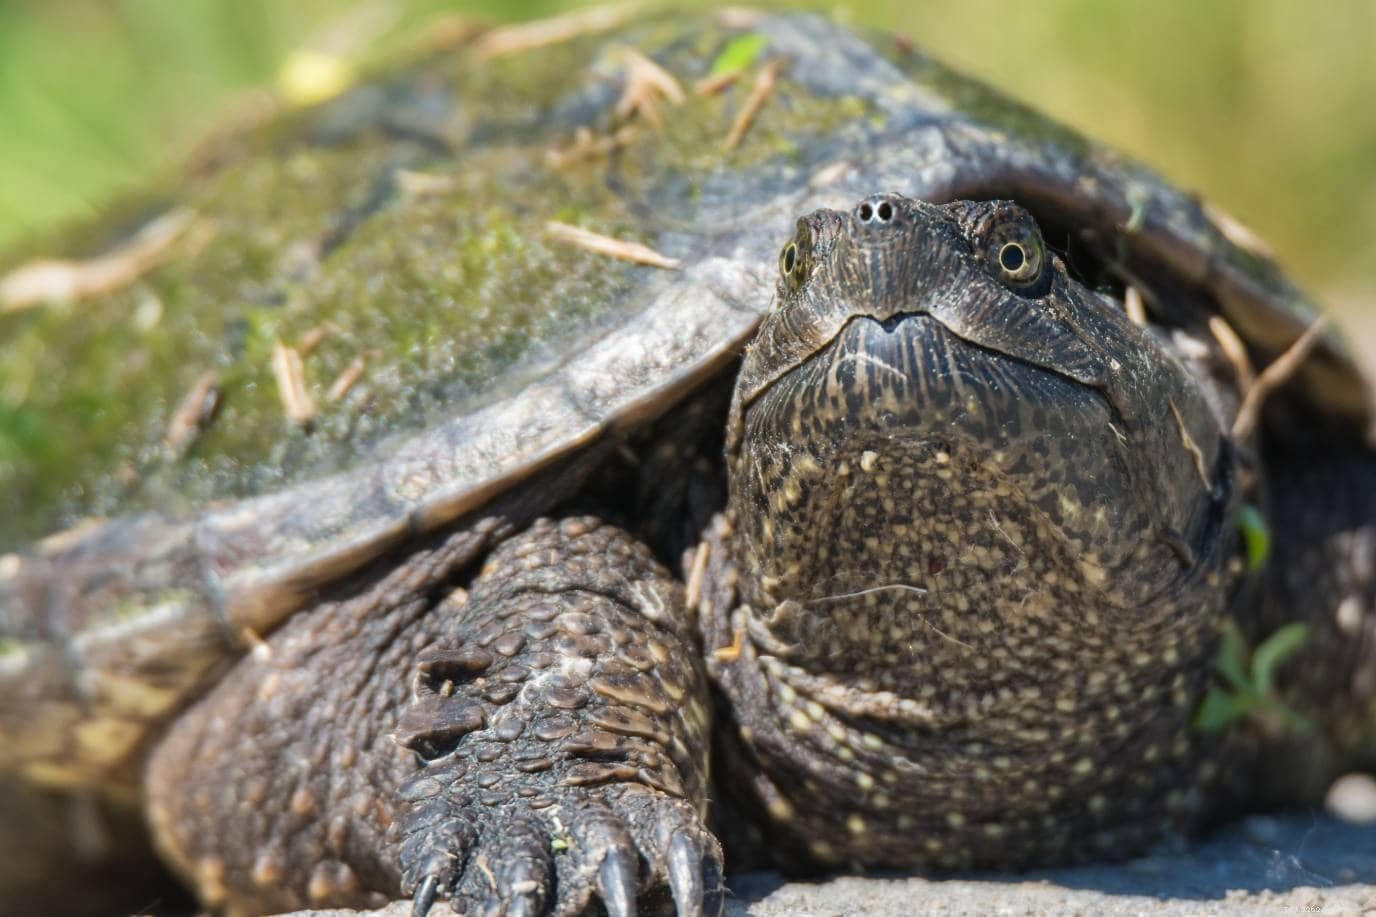 25 sköldpaddor hittade i Virginia (med bilder)